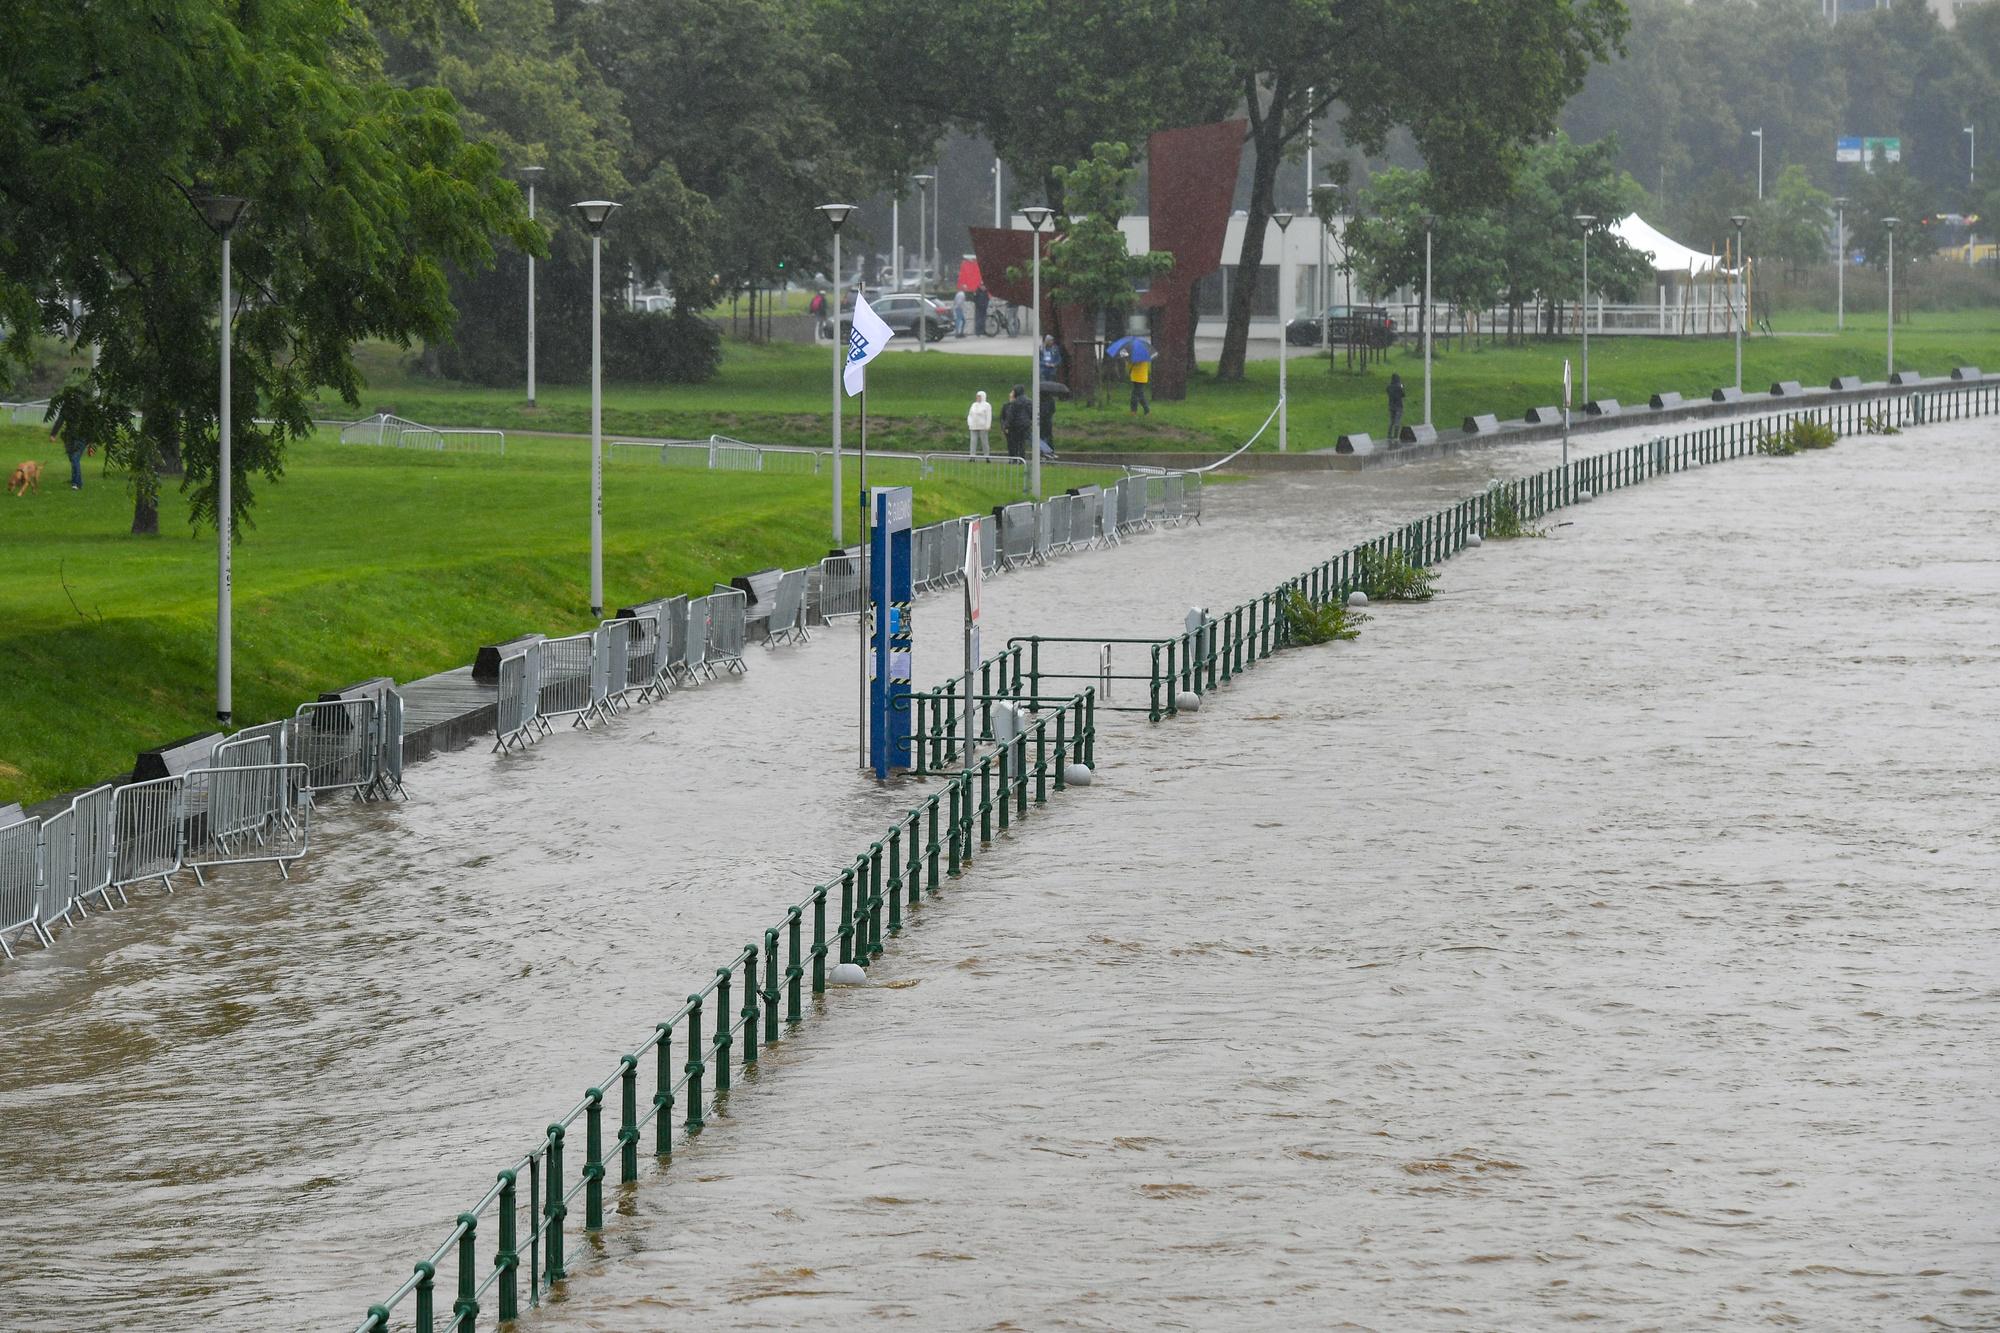 Les berges de Meuse complètement inondées devant le Parc de la Boverie à proximité de la passerelle La Belle Liégeoise